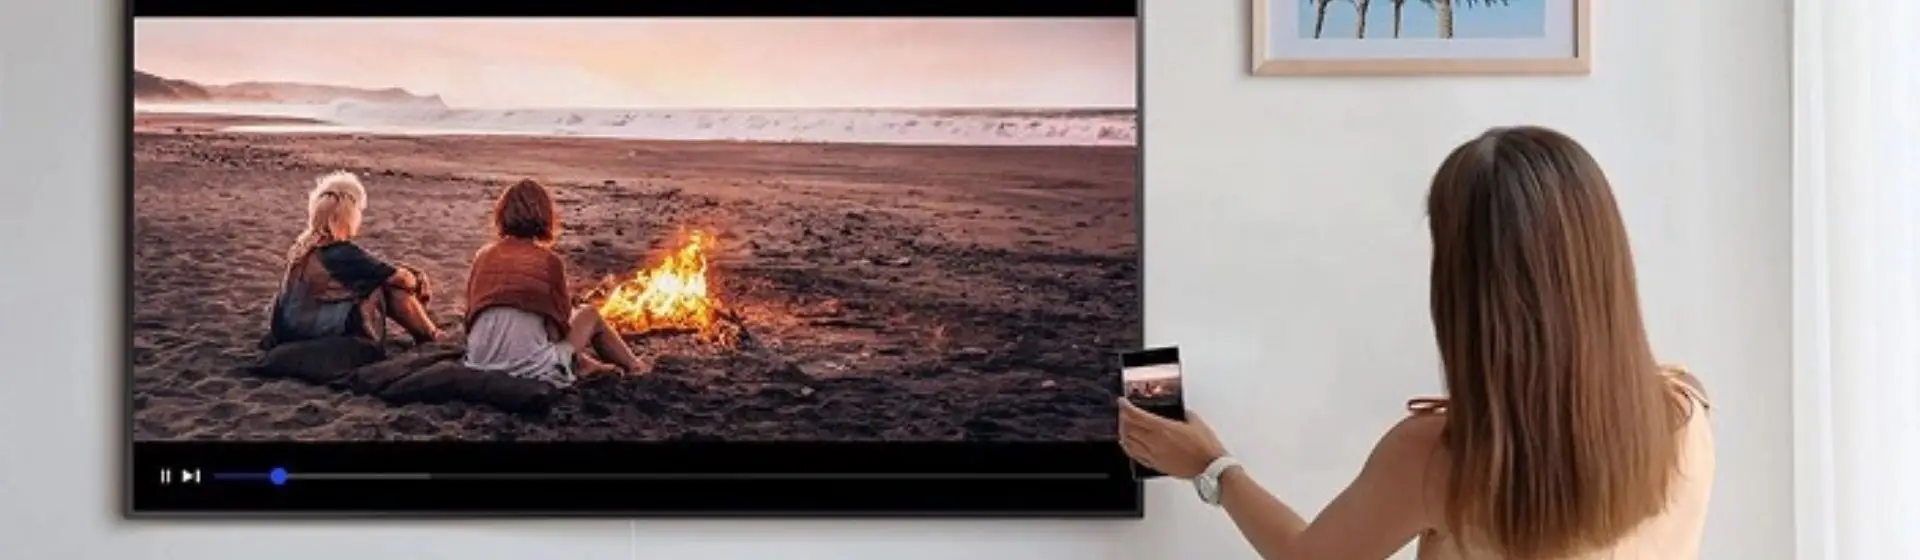 Como espelhar iPhone na TV Samsung: veja o passo a passo